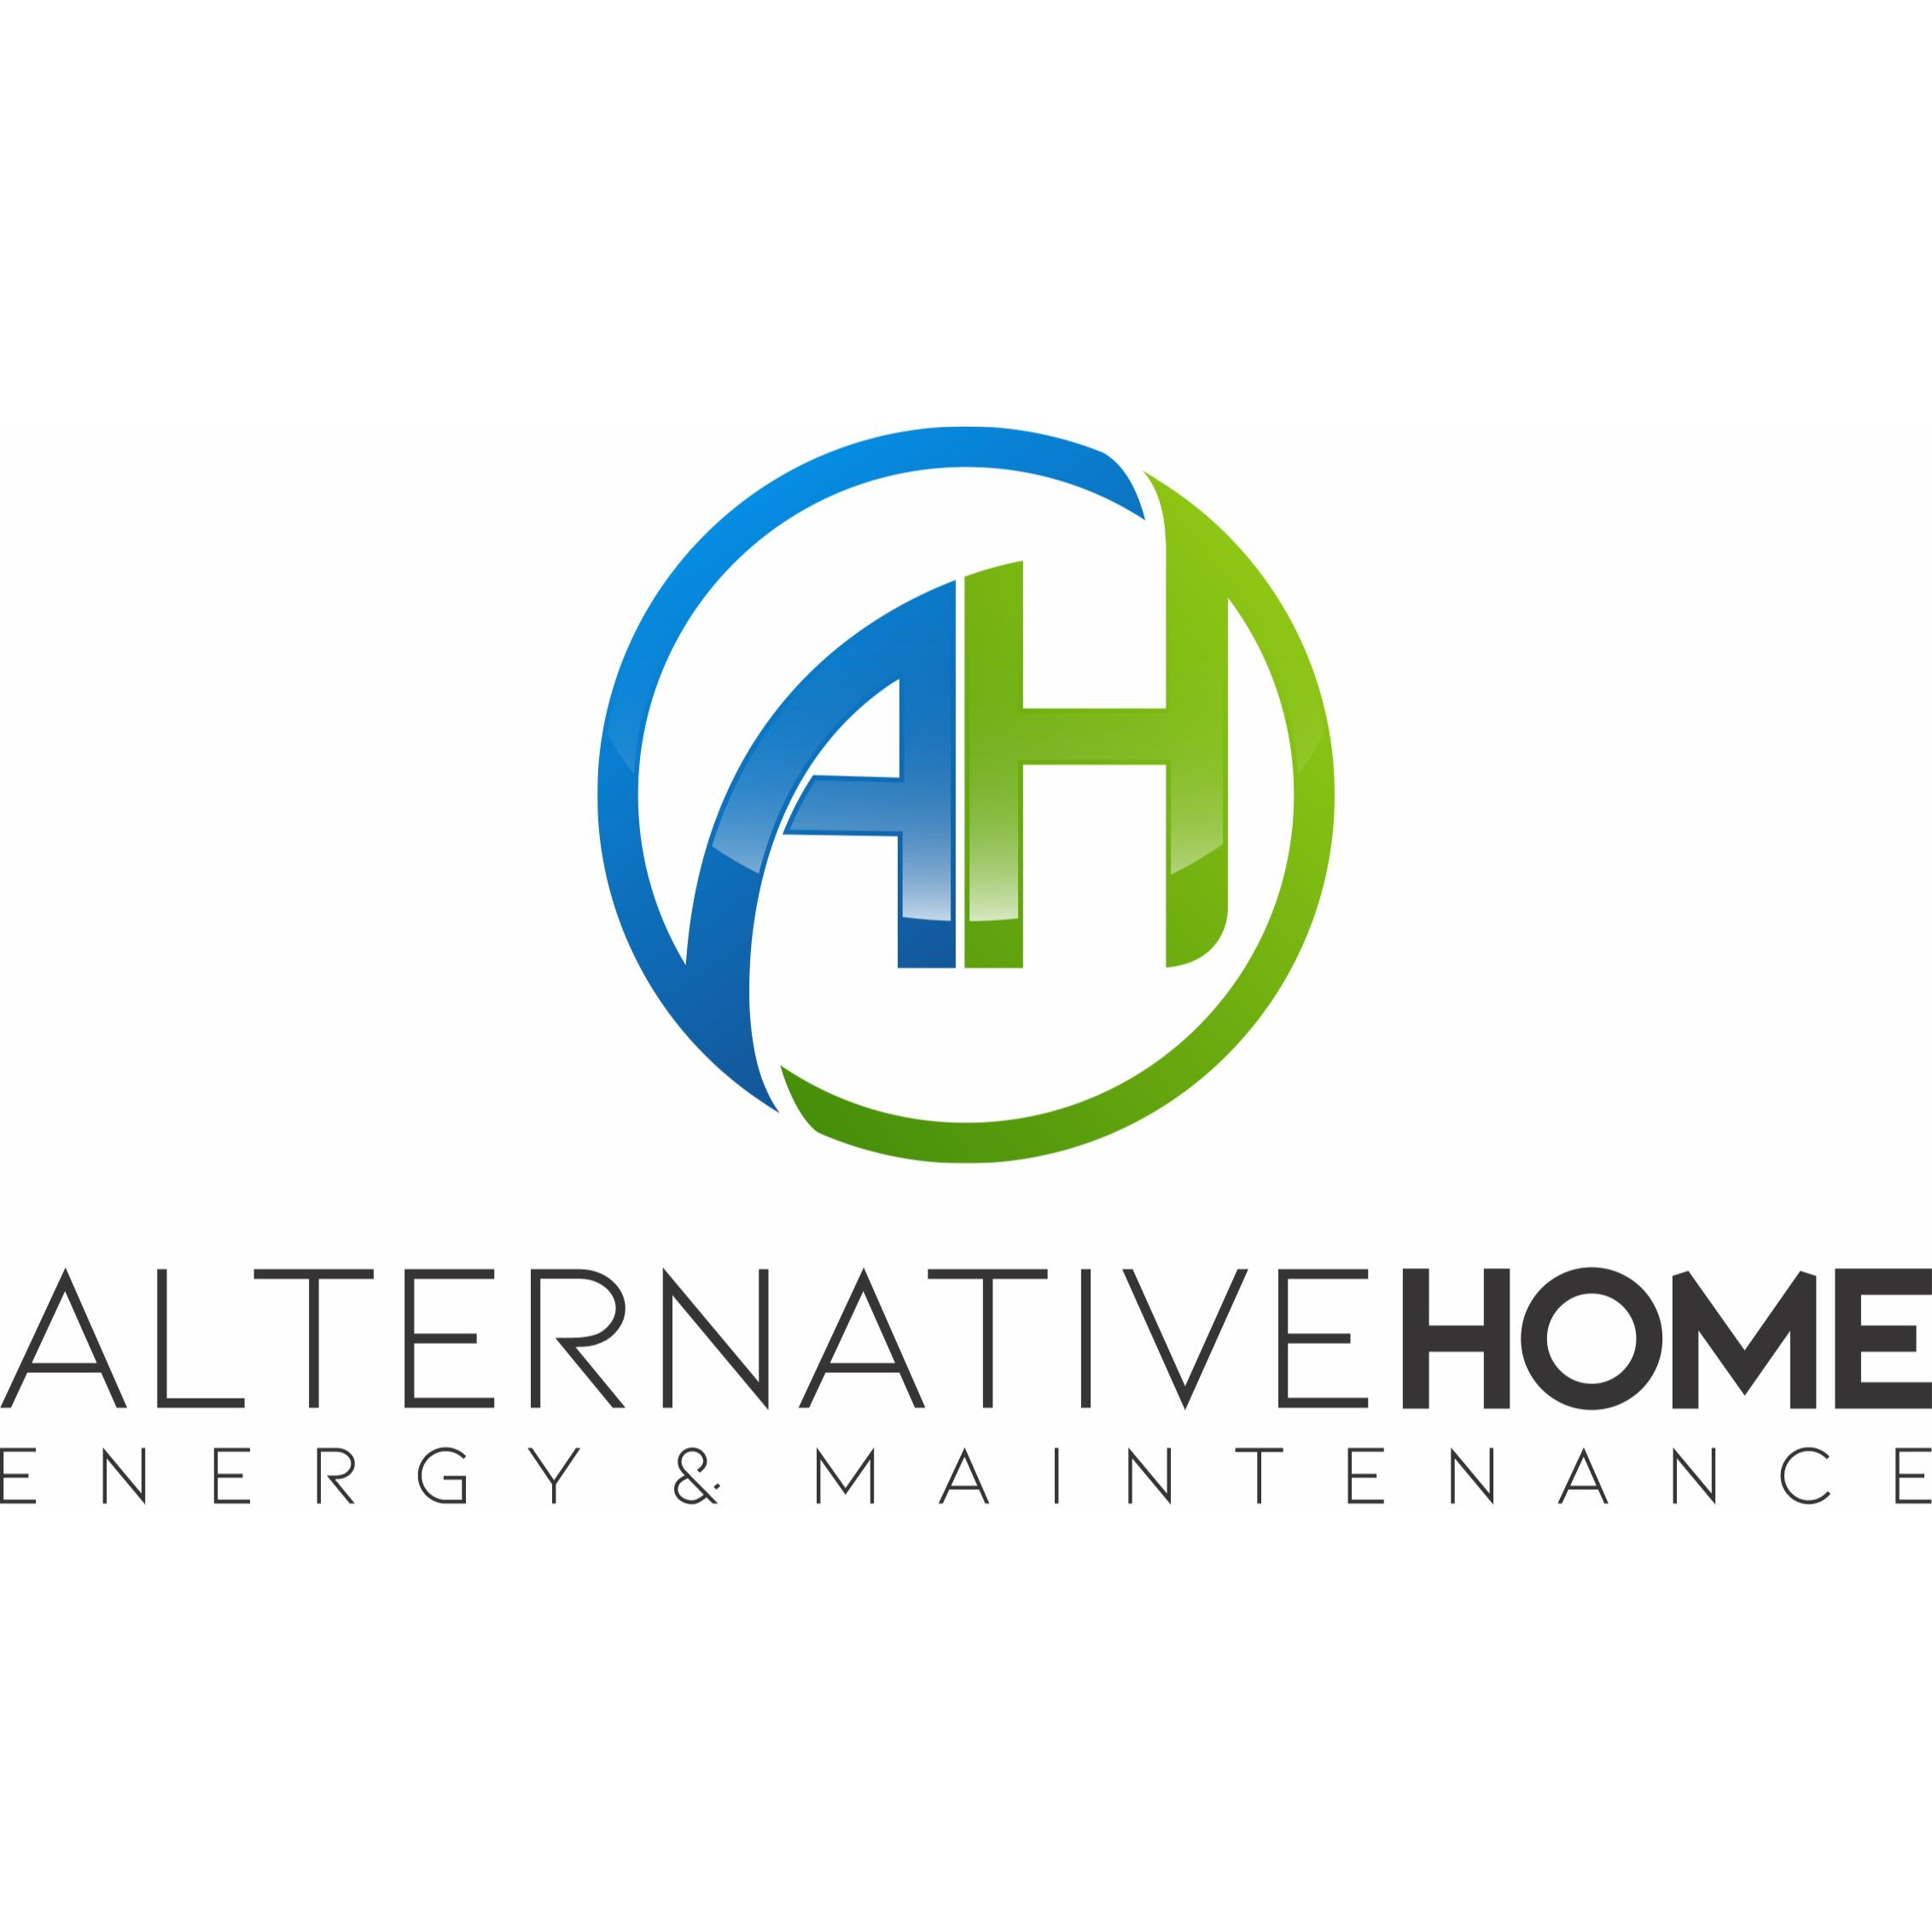 Alternative Home Energy & Maintenance - Plano, TX - (214)838-7157 | ShowMeLocal.com